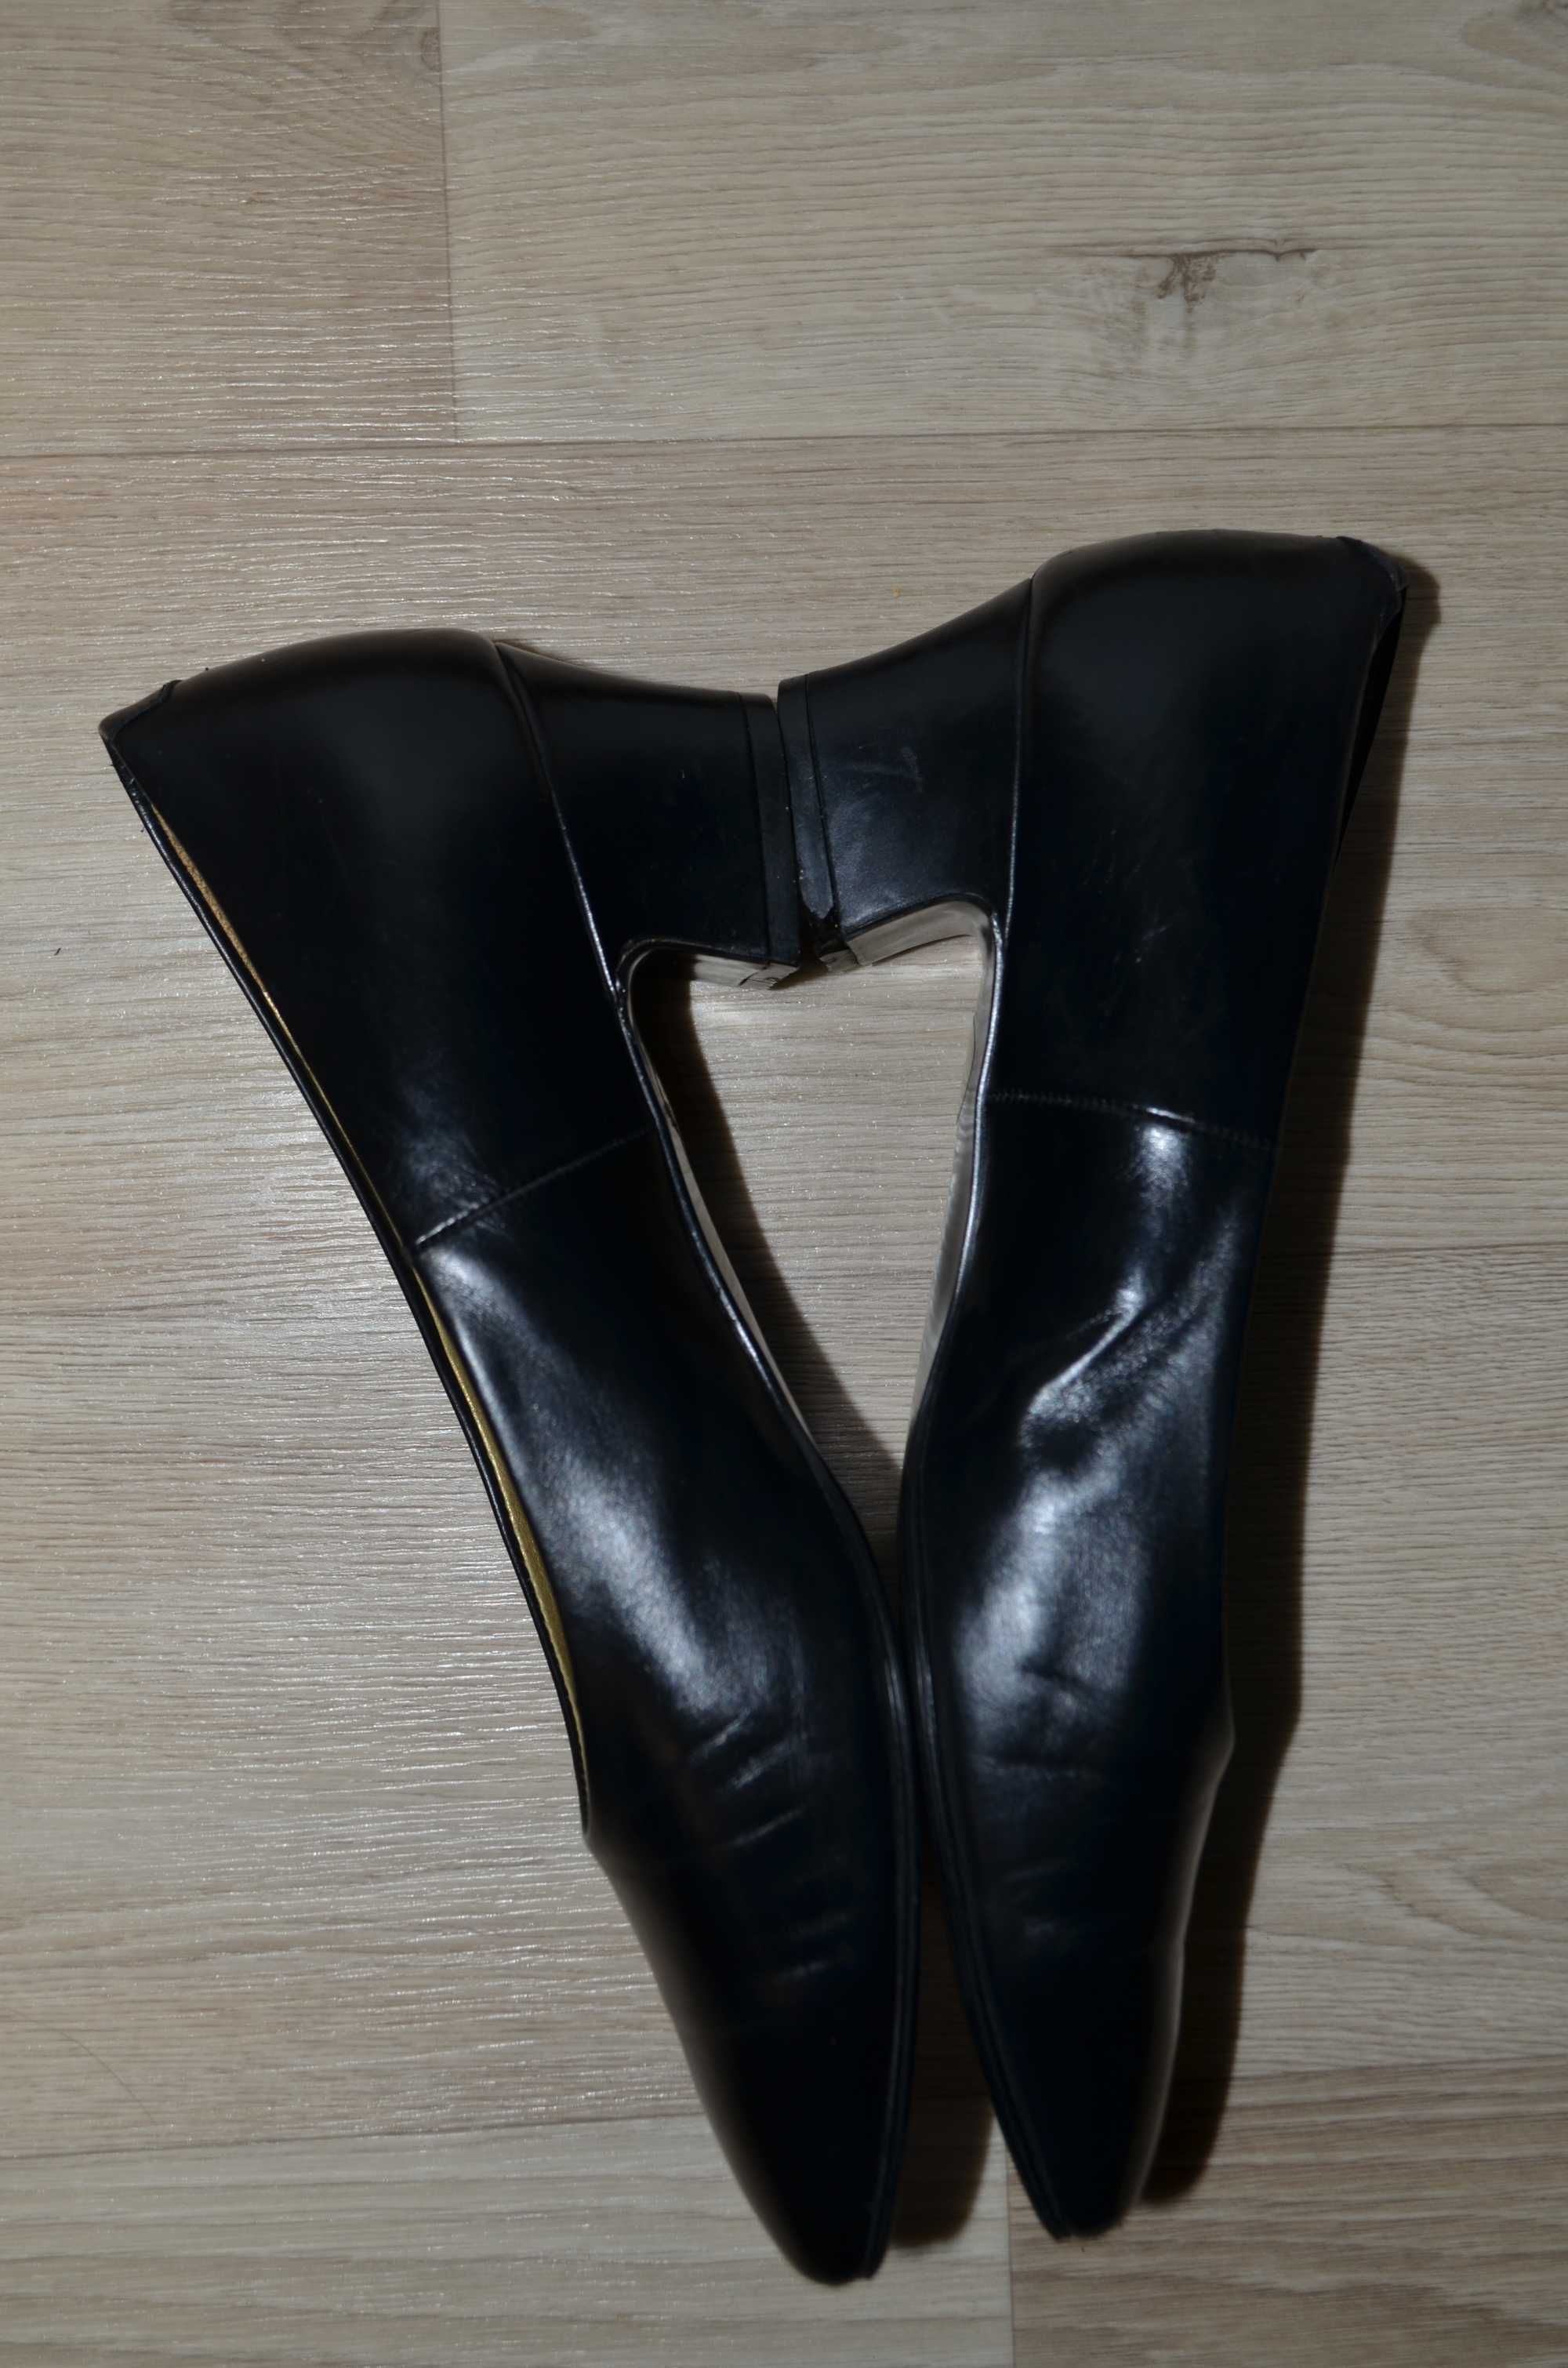 Yves Saint Laurent Pumps Women Low Heel Shoes Leather Vintage Р.36 1/2